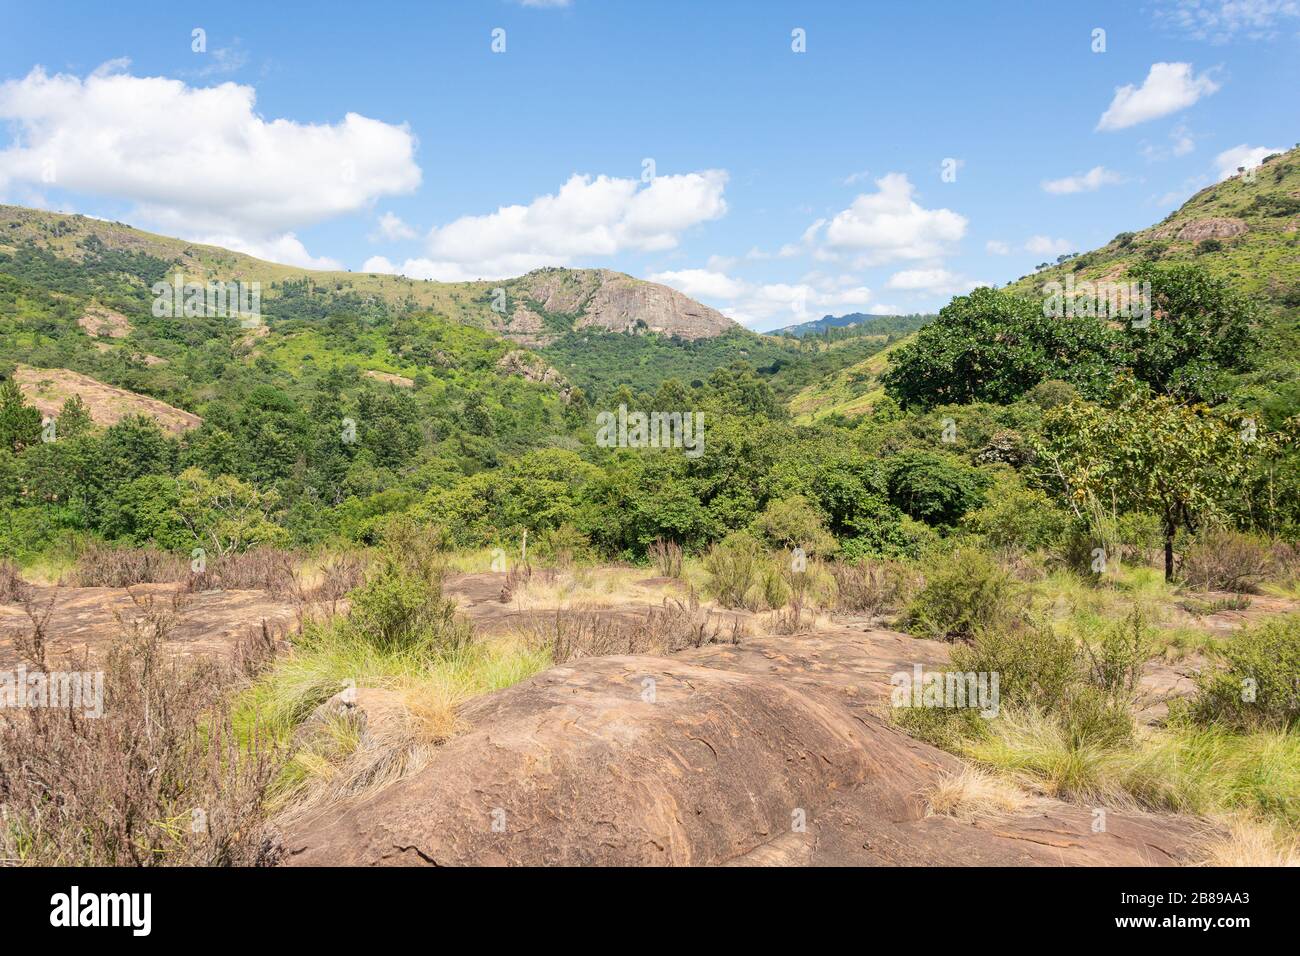 Paysage de montagne à la réserve naturelle de Mantenga, Lobamba, vallée d'Ezulwini, région de Hhohho, Royaume d'Eswatini (Swaziland) Banque D'Images